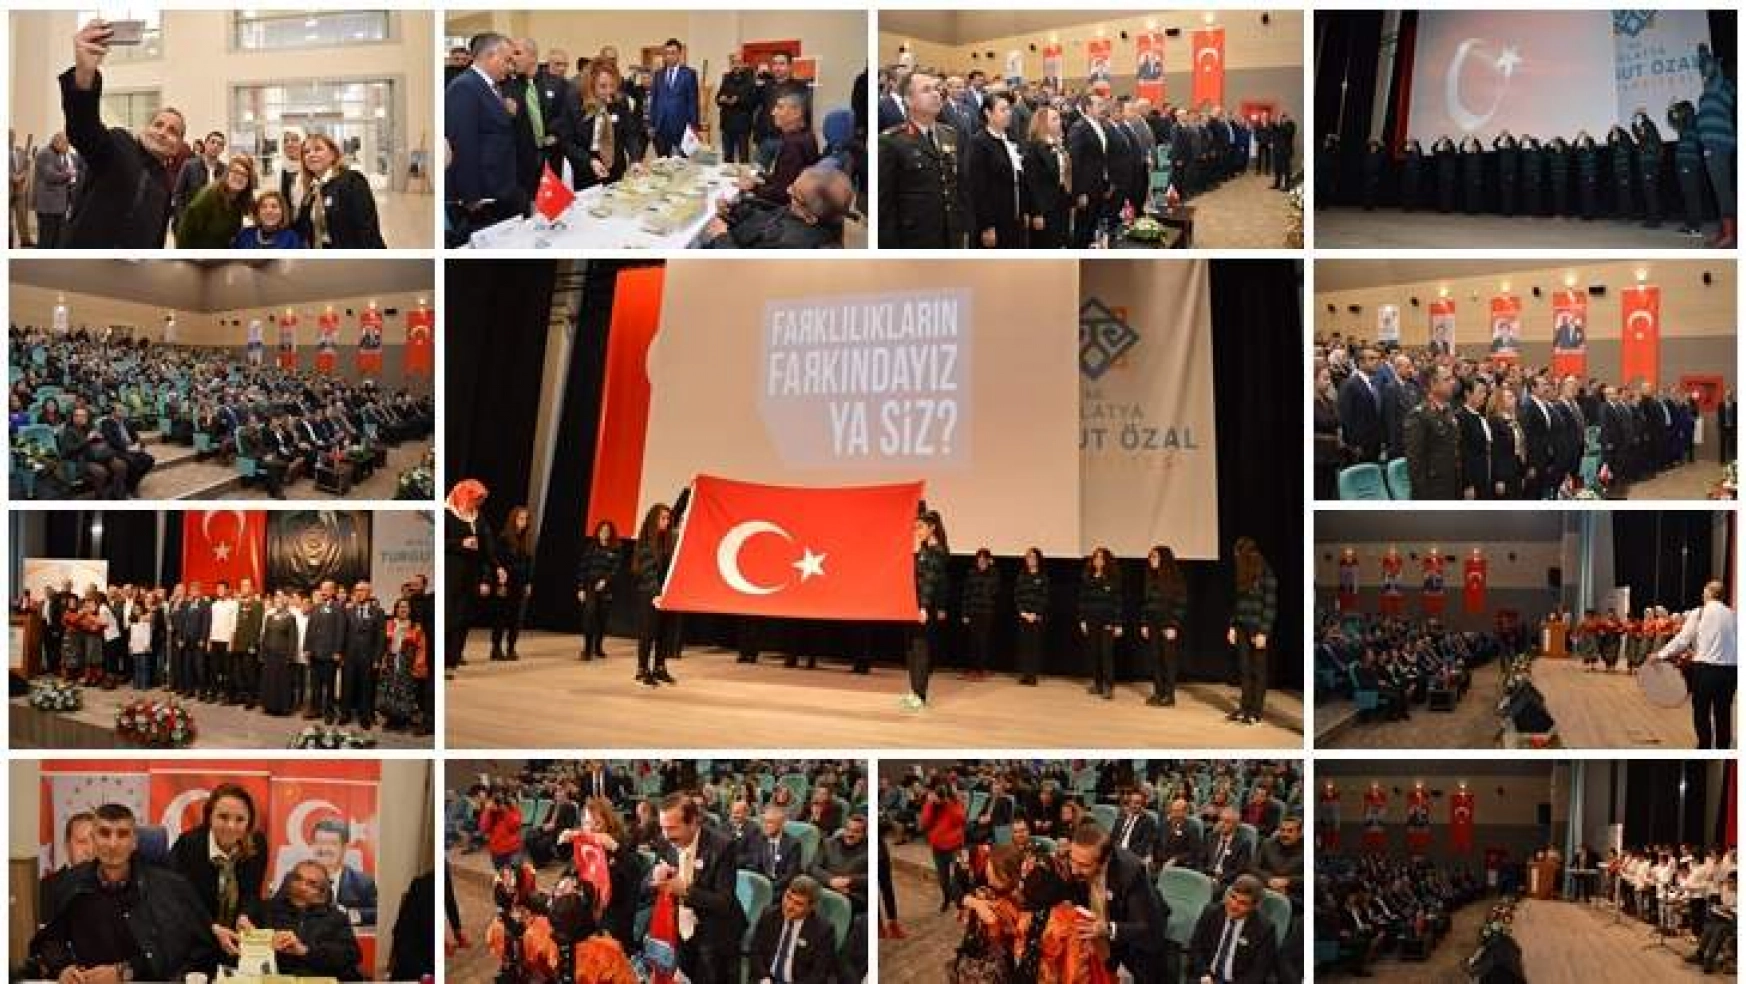 Turgut Özal Üniversitesinde 'Faklılıkların Farkındayız Ya Siz' adlı etkinlik yapıldı